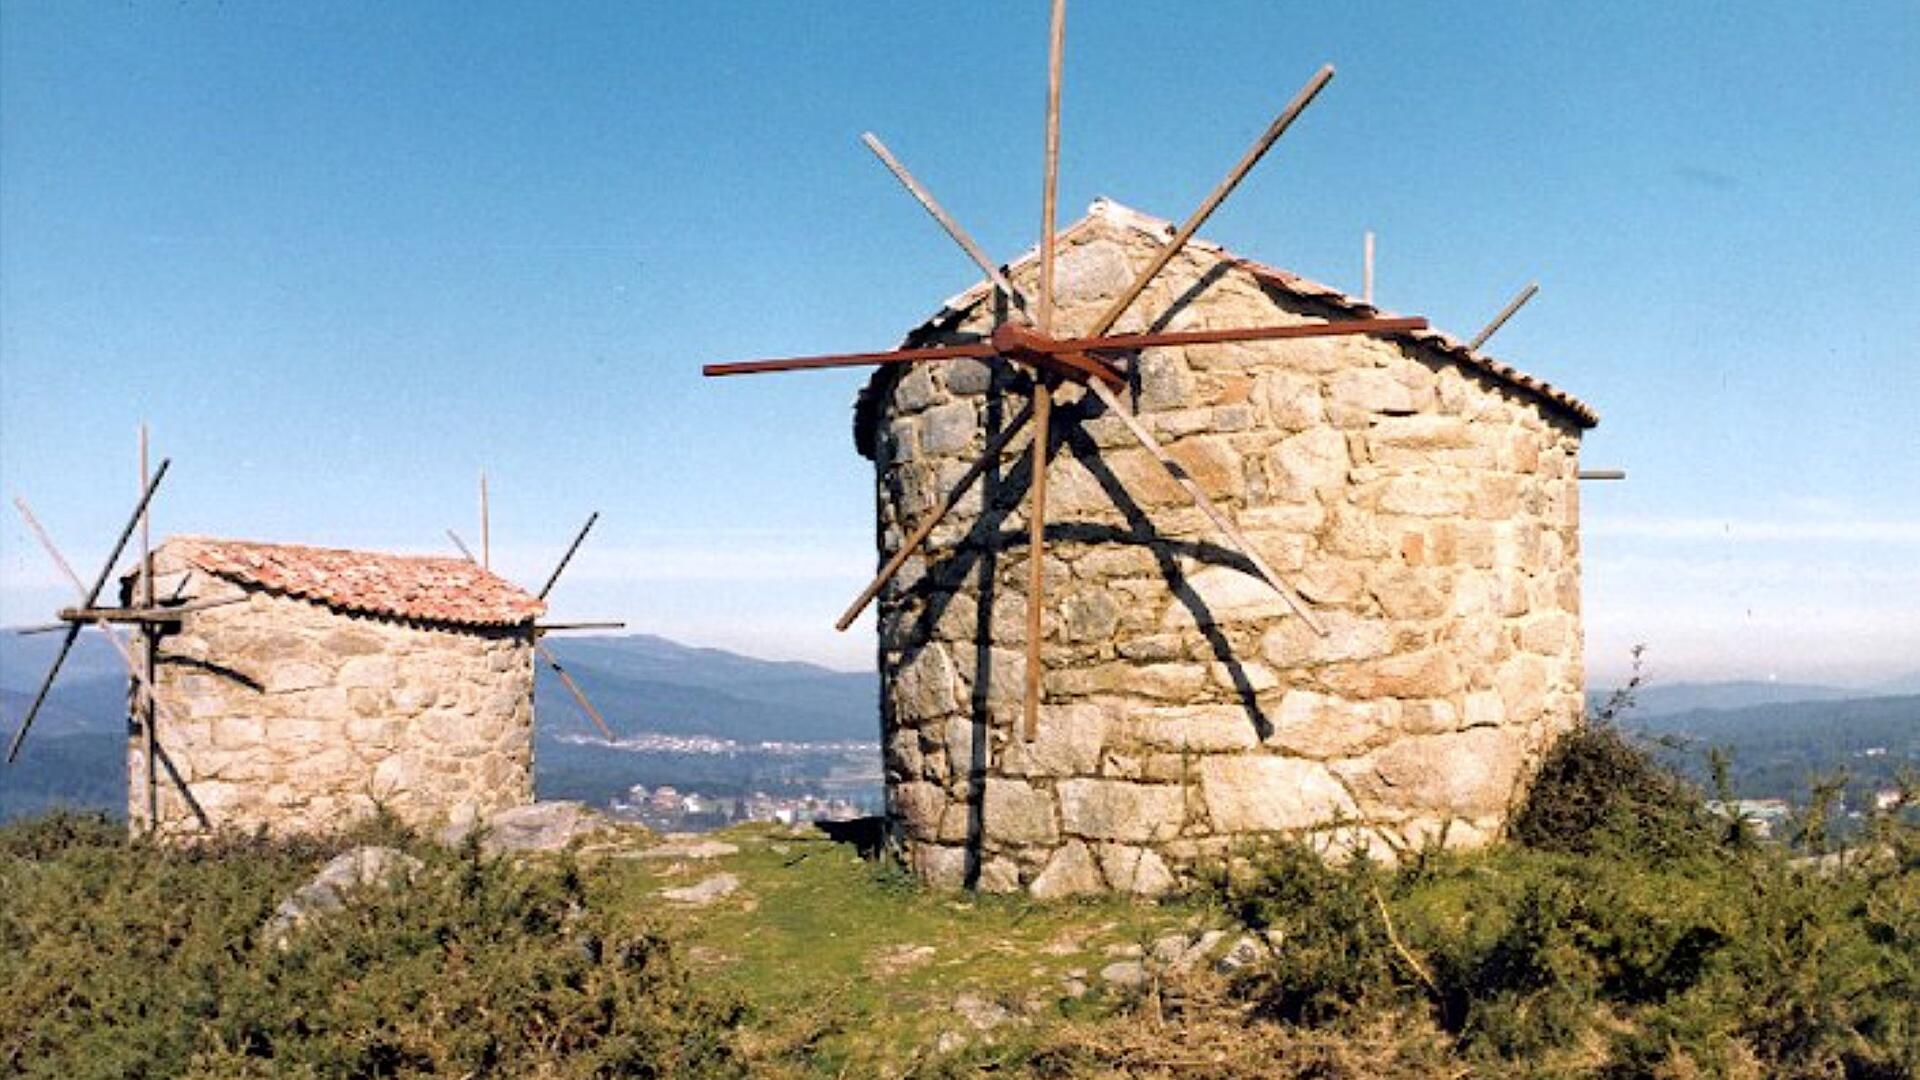 Los molinos de viento de Abalo en Catoira, un conjunto de